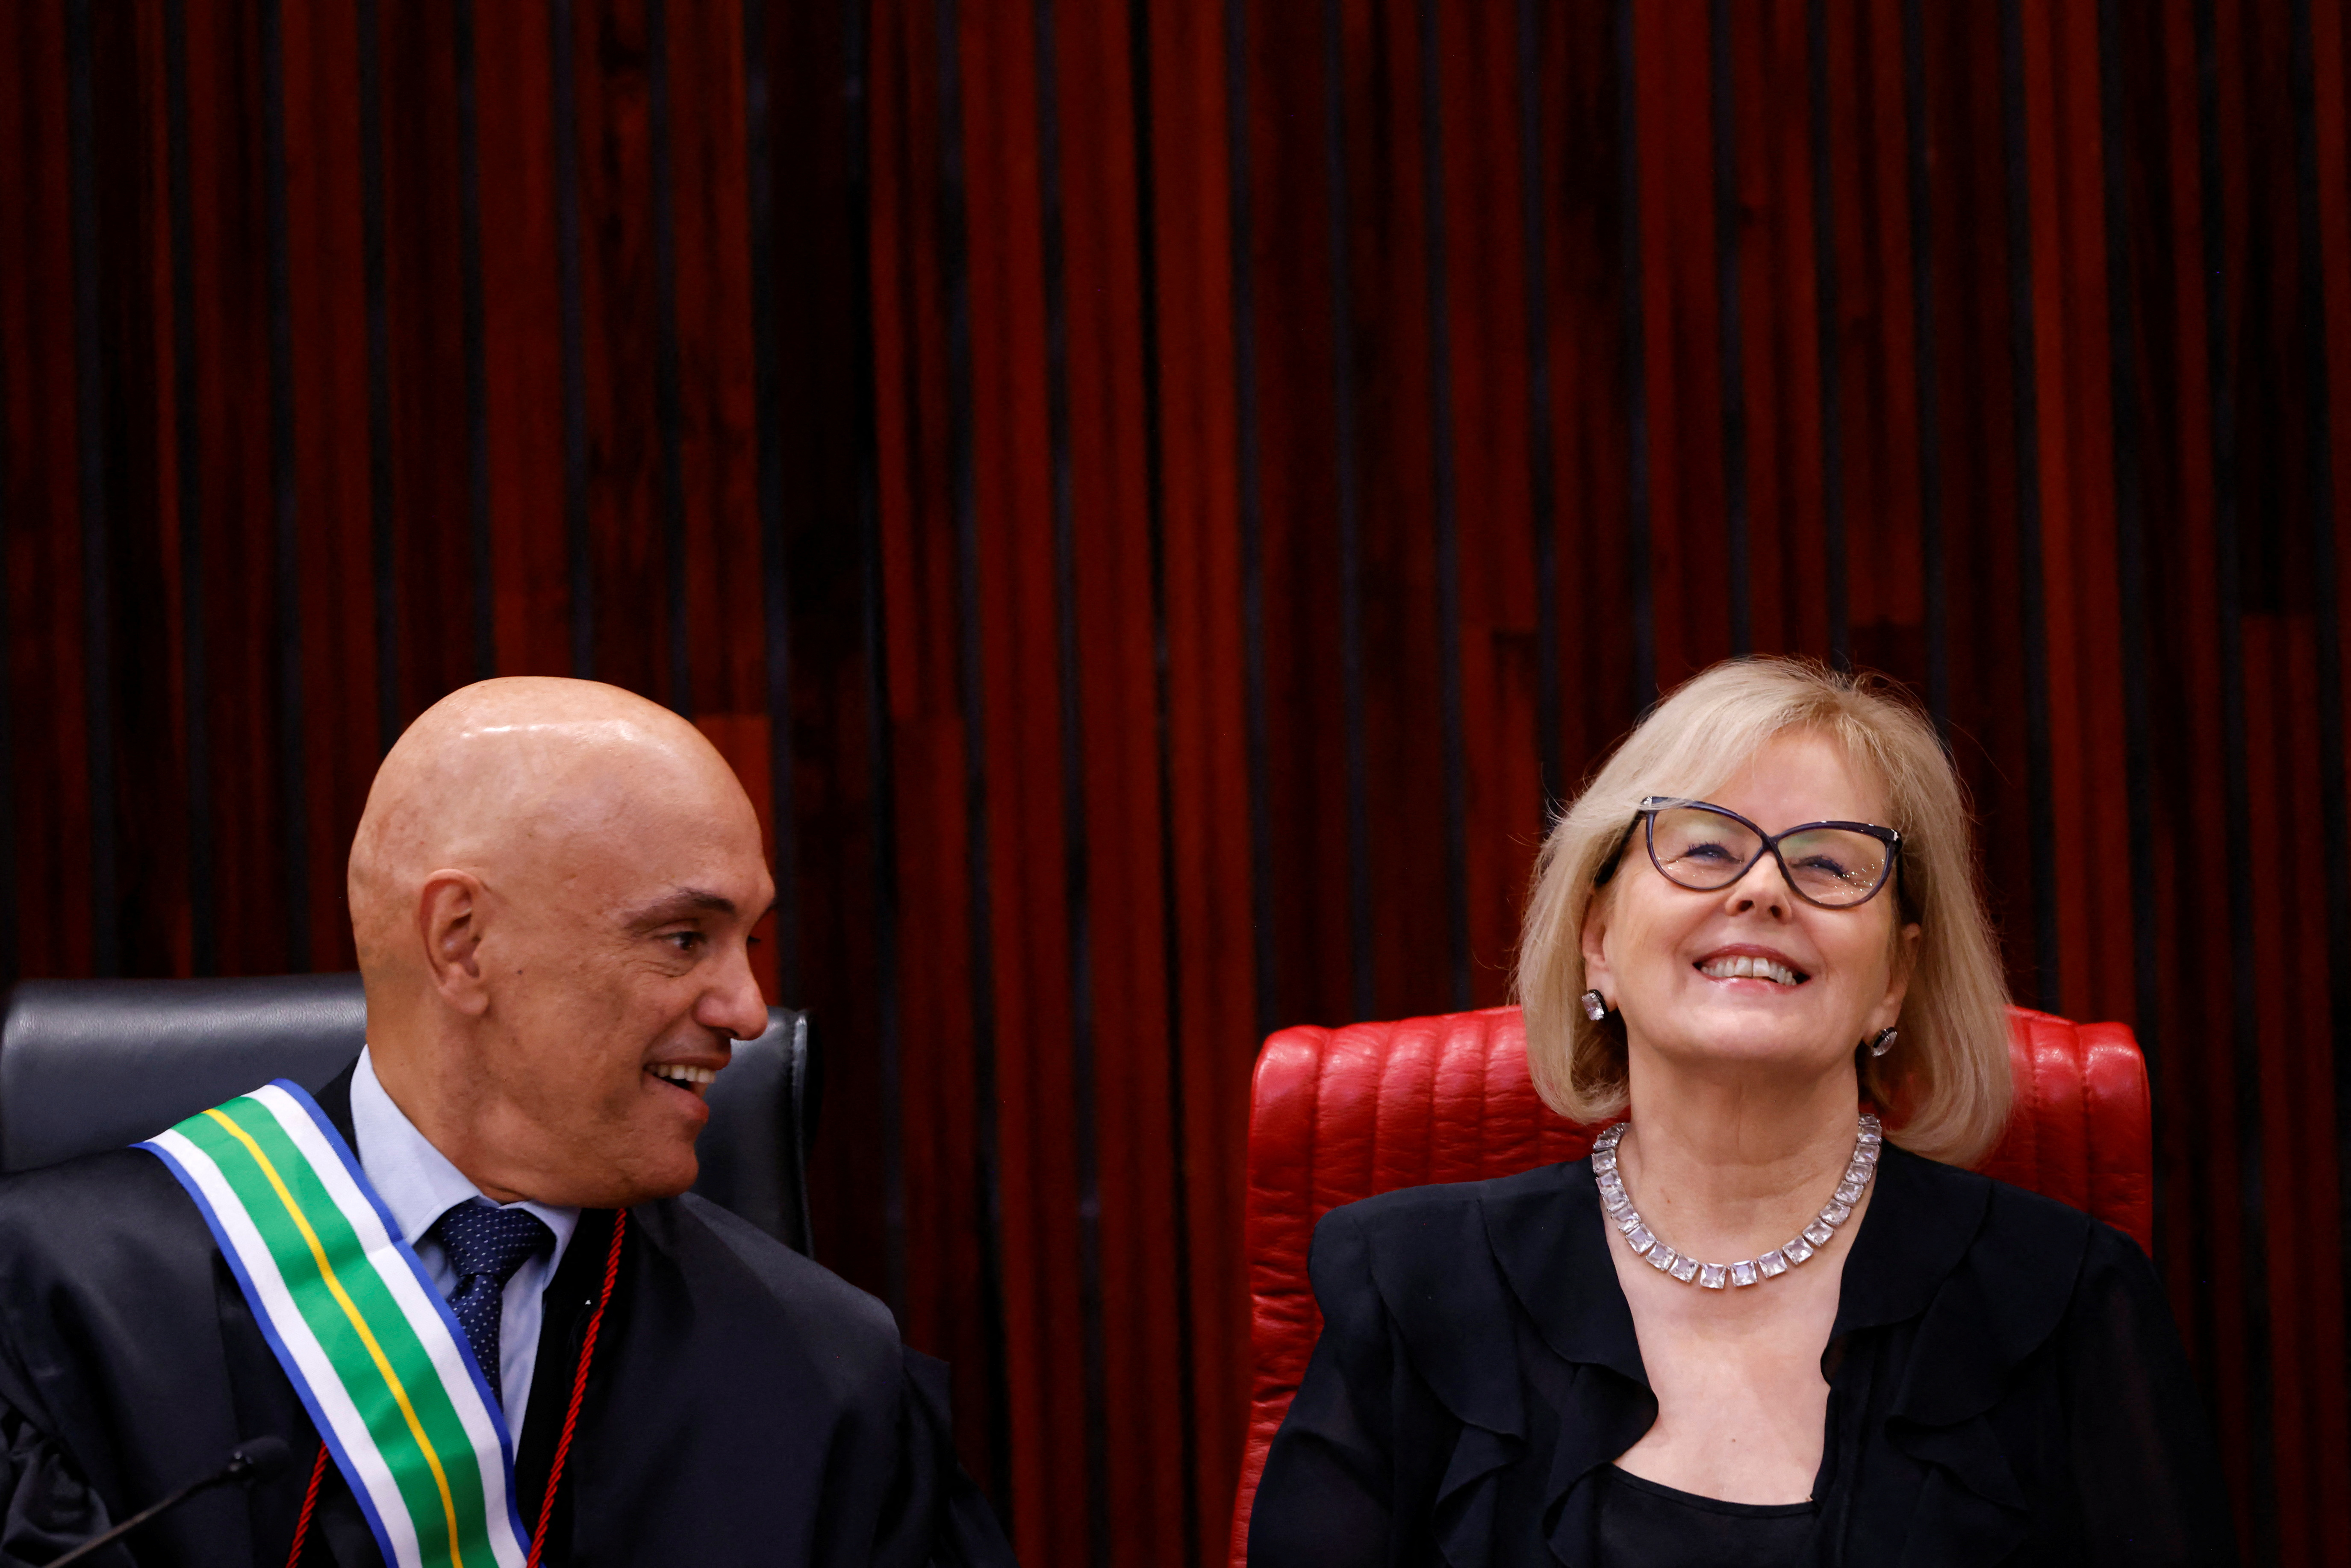 Foto de archivo del juez Alexandre de Moraes y la presidenta del Supremo Tribunal Federal de Brasil, Rosa Weber (REUTERS/Adriano Machado)